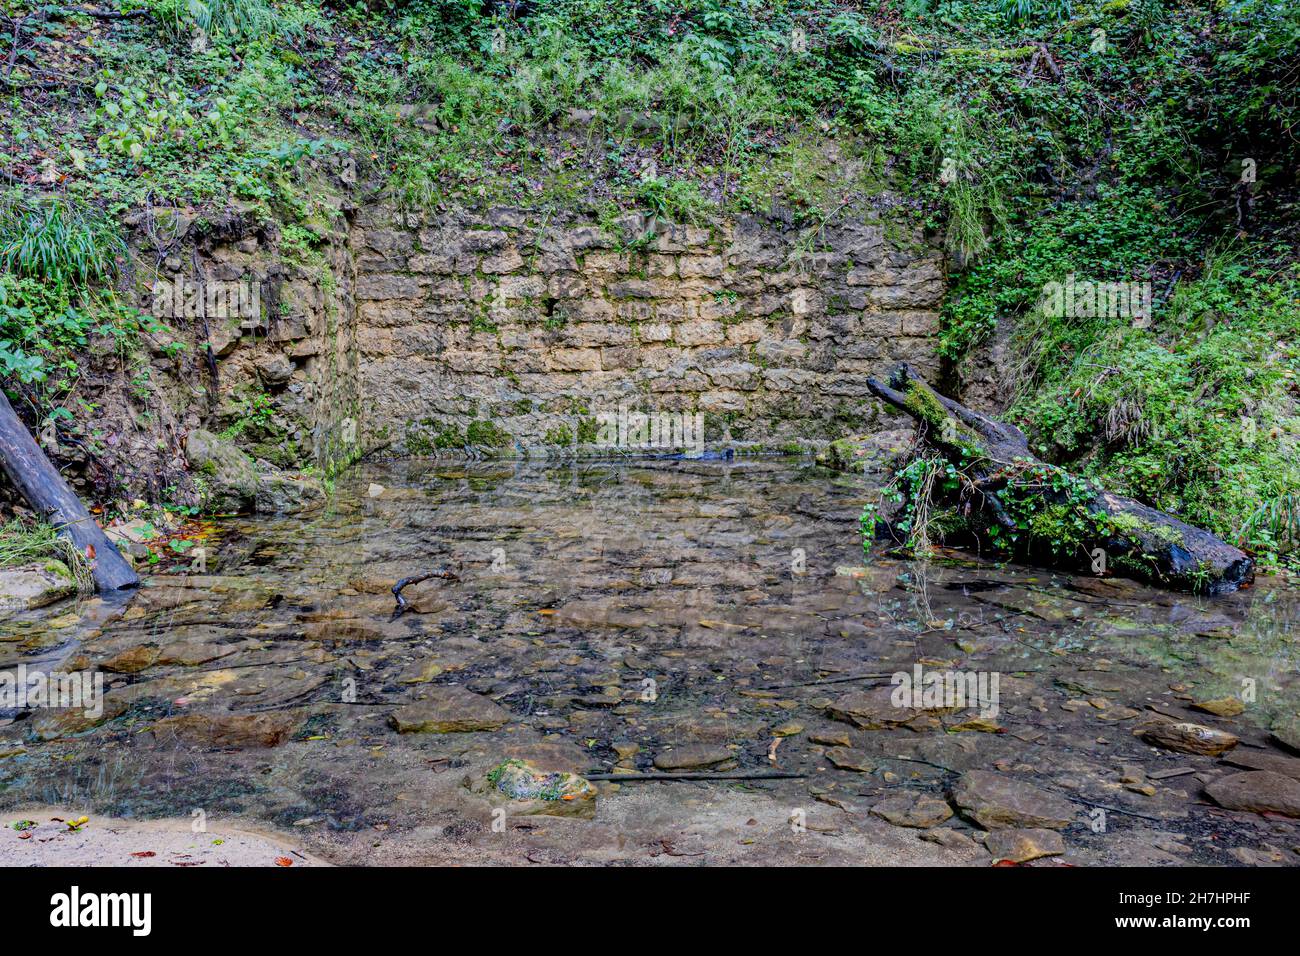 Mur de briques en pierre sur la colline entouré d'une végétation sauvage verte, avec accumulation d'eau transparente, propre et cristalline sur les pierres sur le g Banque D'Images